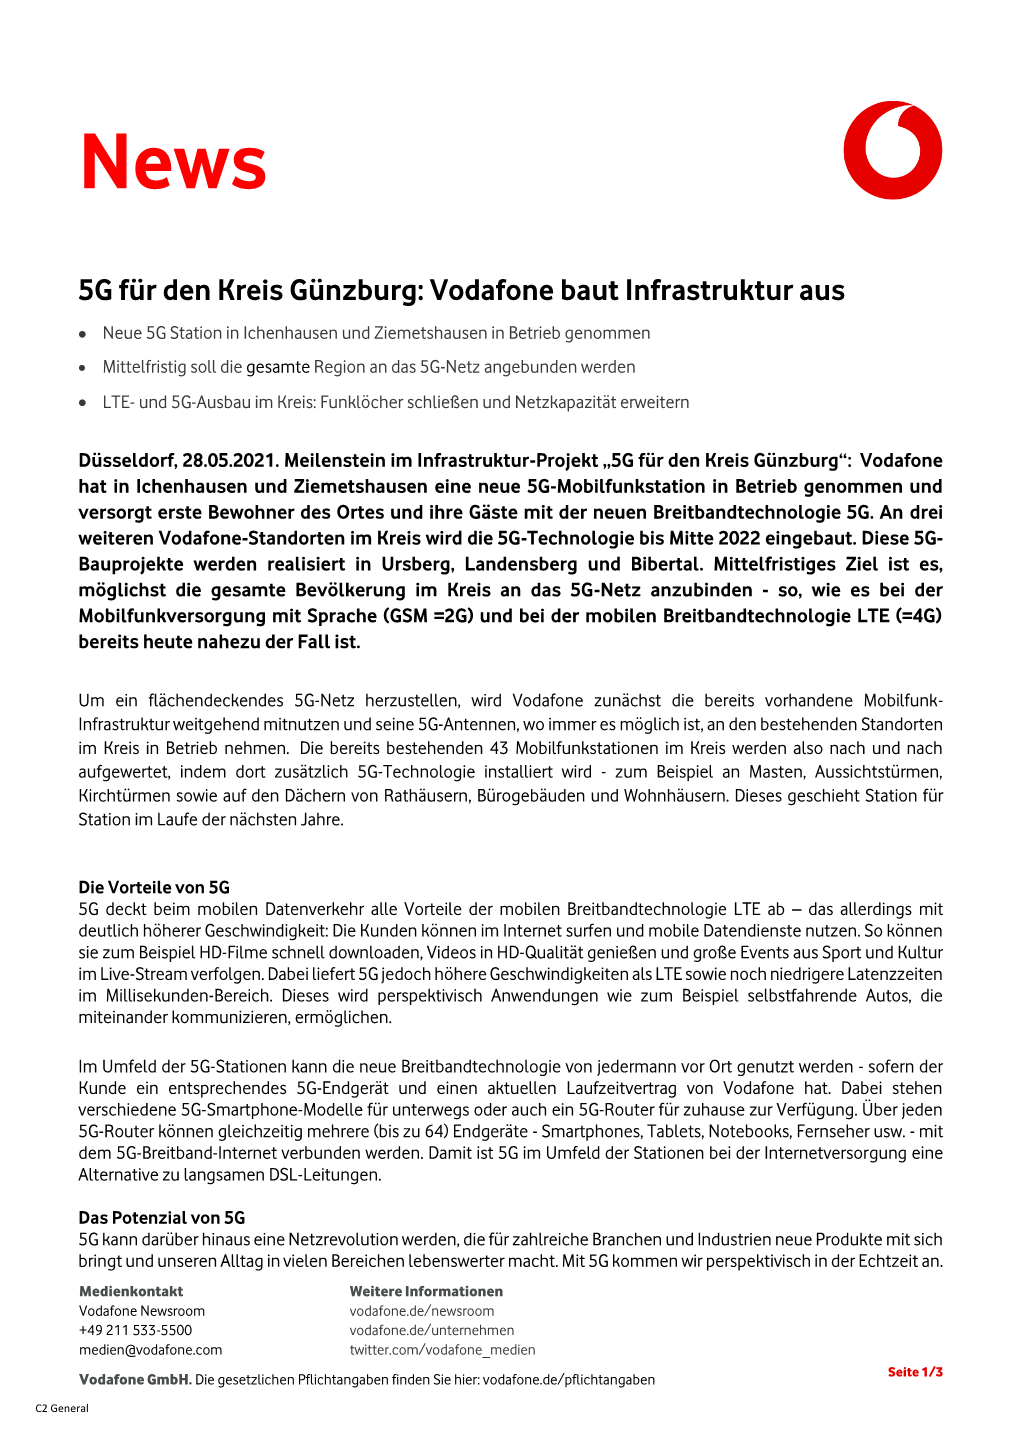 5G Für Den Kreis Günzburg: Vodafone Baut Infrastruktur